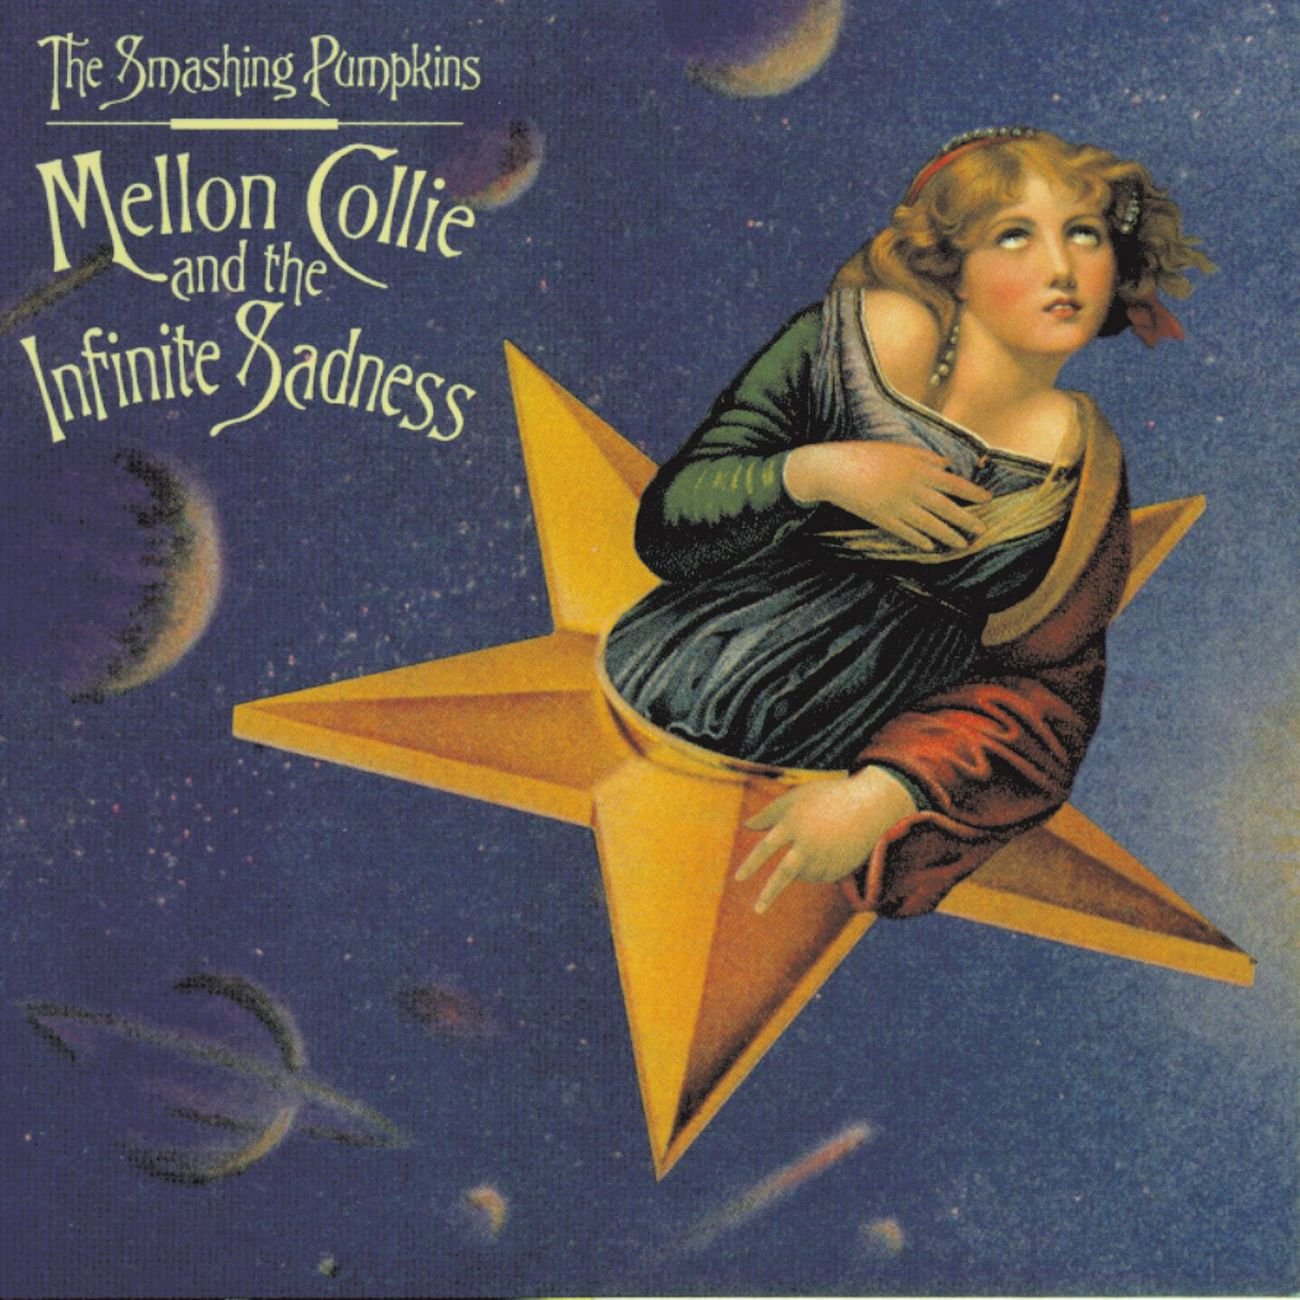 The Smashing Pumpkins - ‘Mellon Collie and the Infinite Sadness’